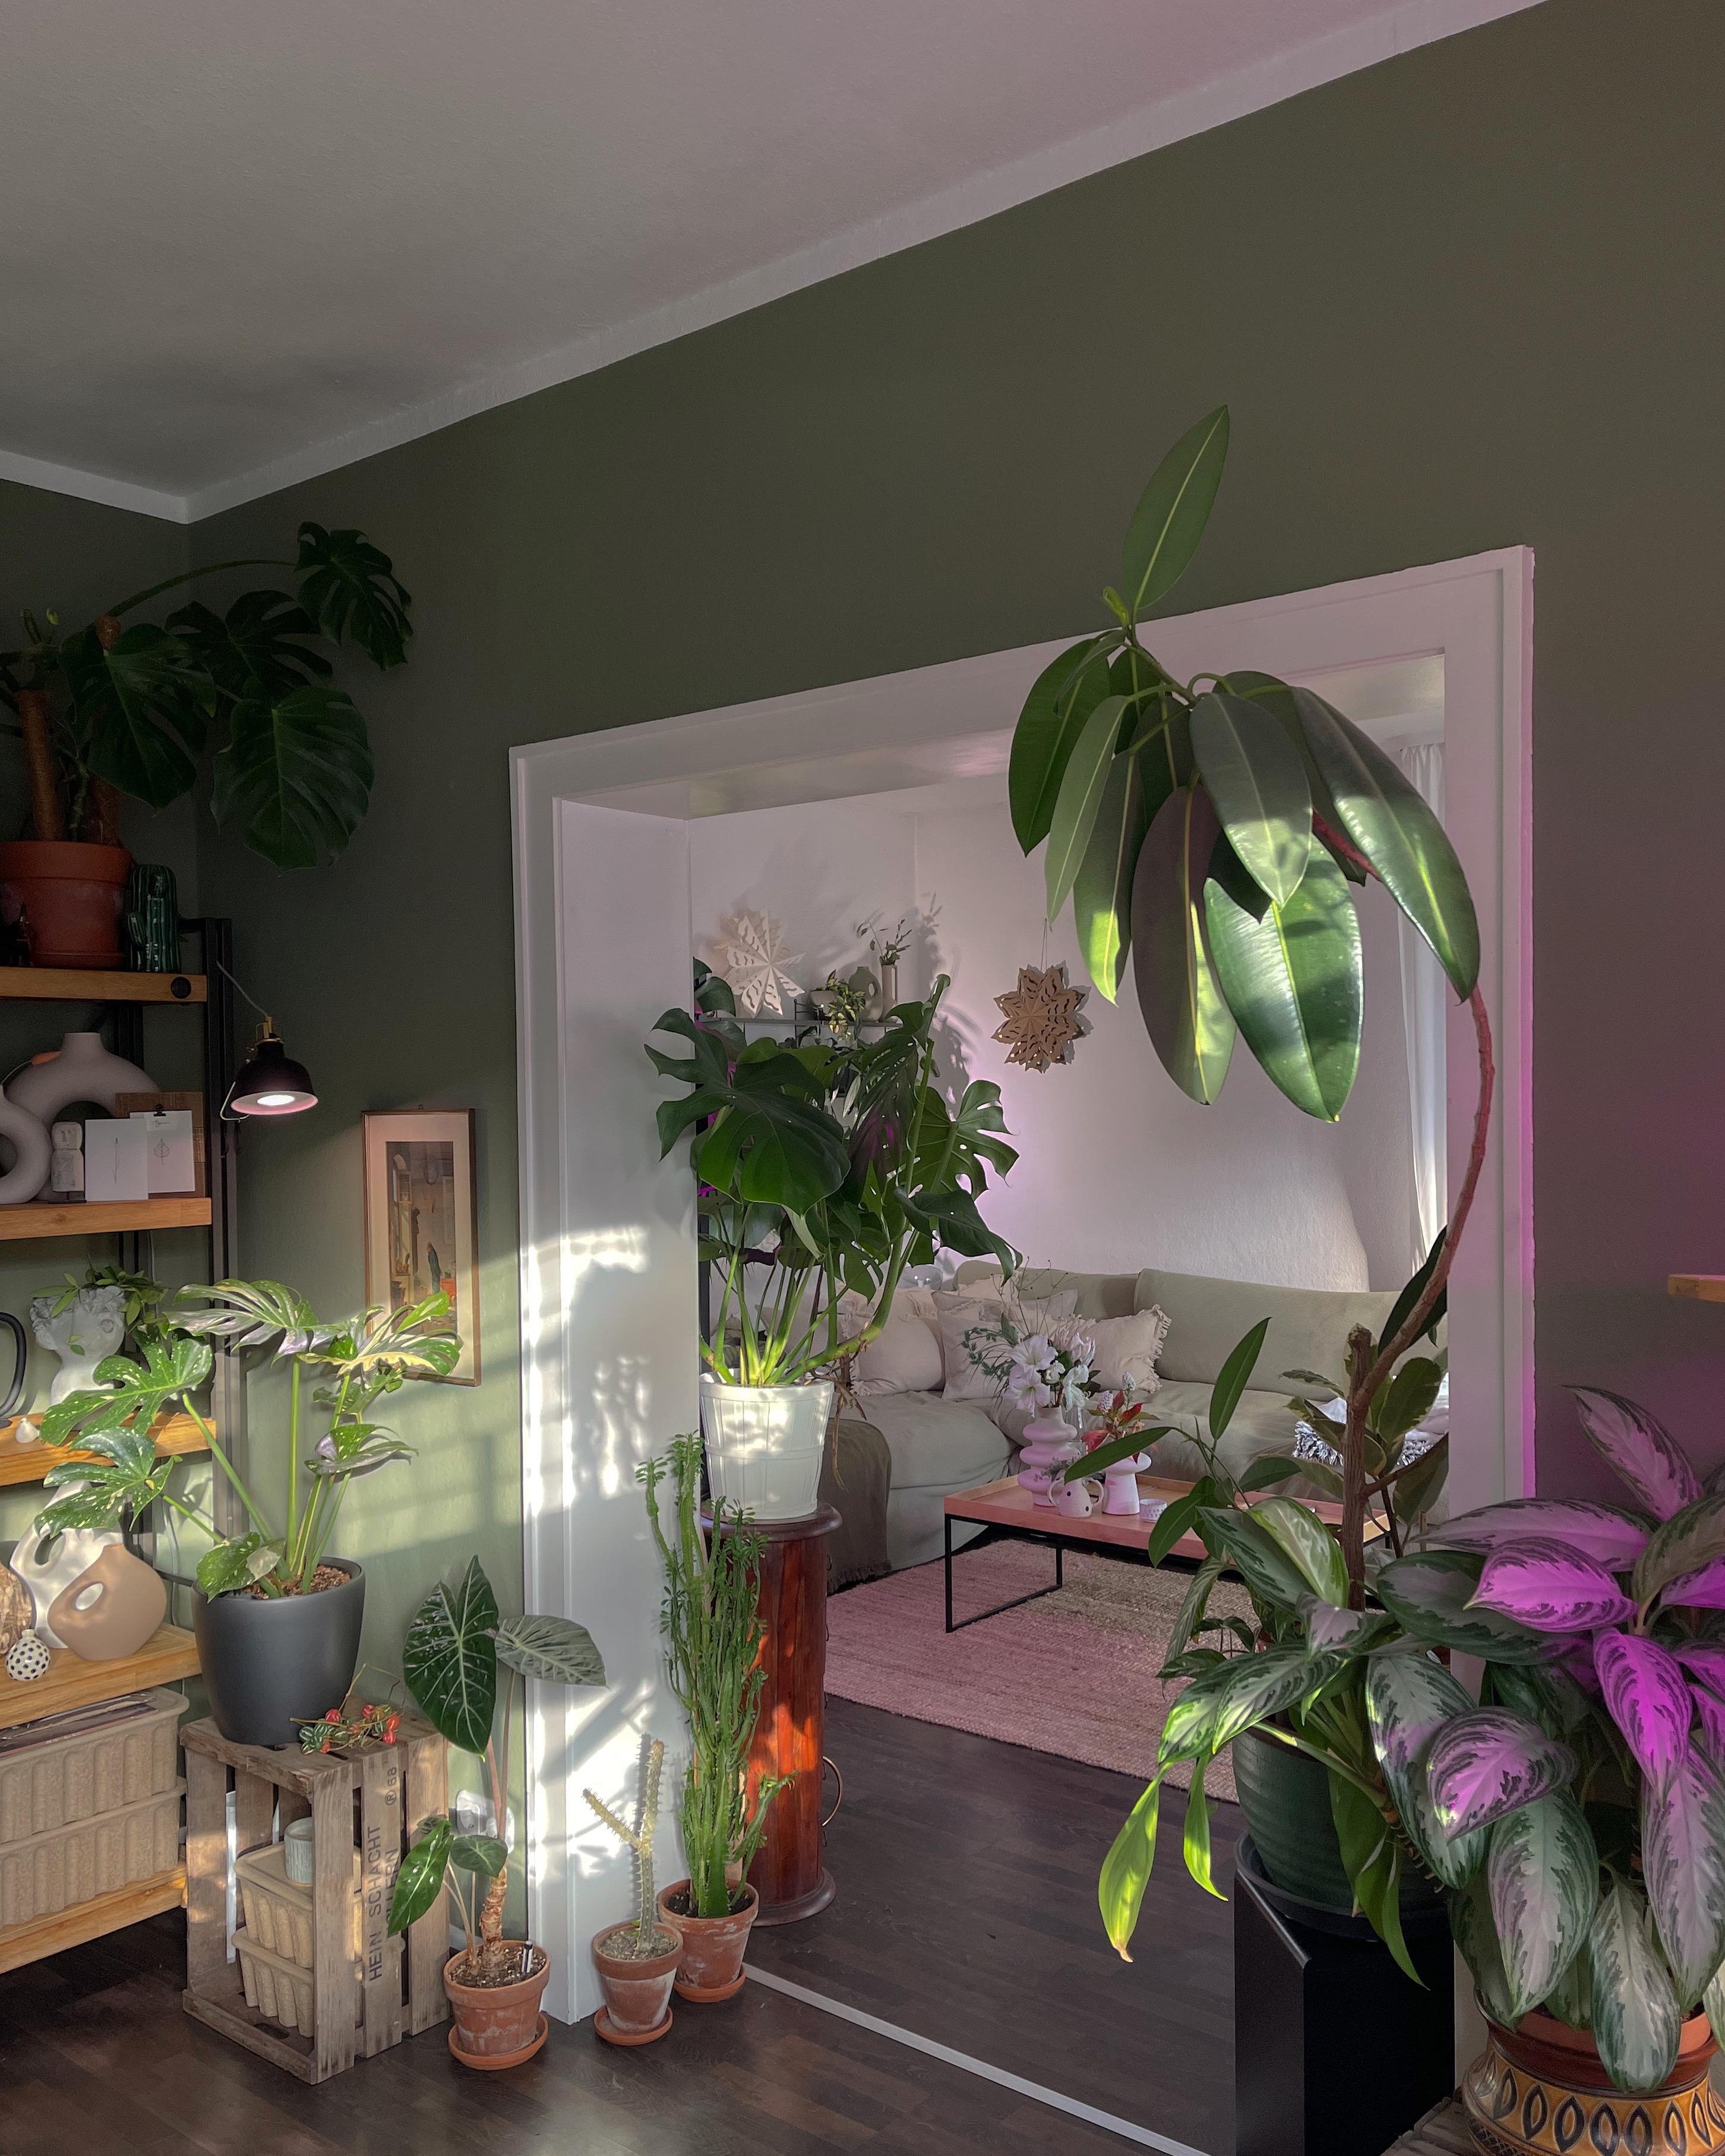 #esszimmer #wohnzimmer #livingroom #plants #interiorinspo #pflanzenliebe #altbau #altbauliebe #hygge #boho #interior 